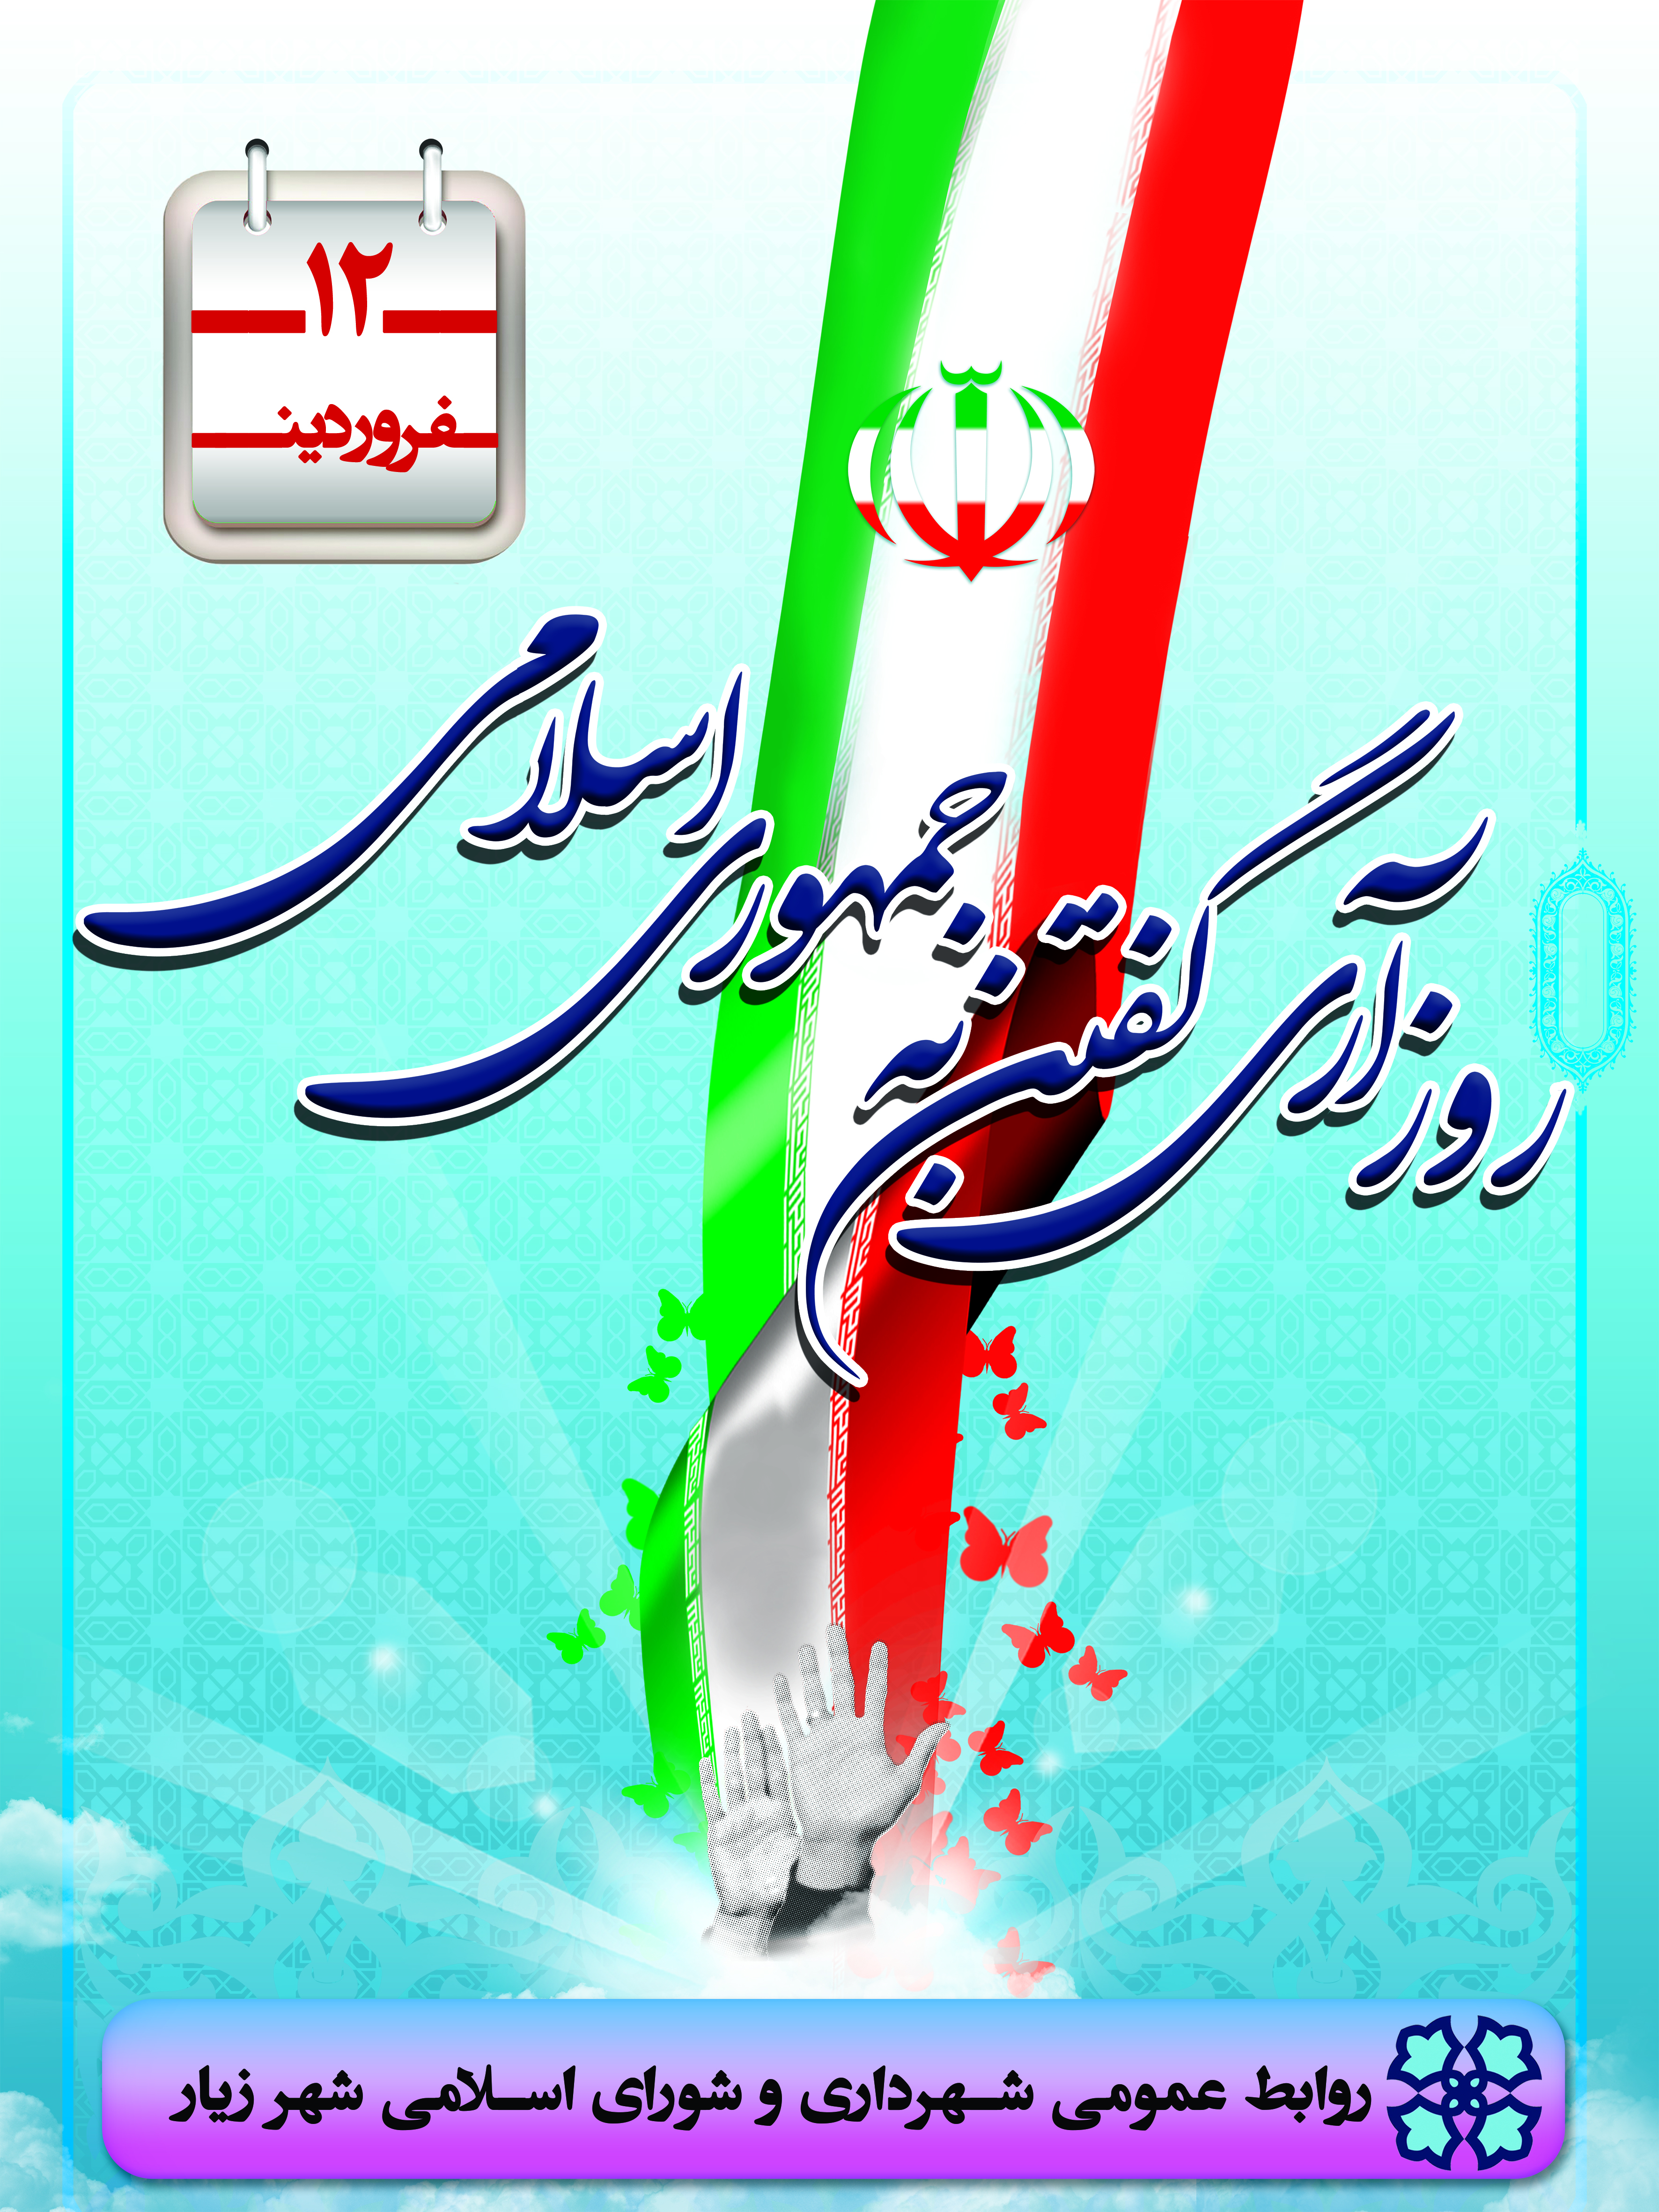 دوازدهم فروردین روز جمهوری اسلامی ایران گرامی باد